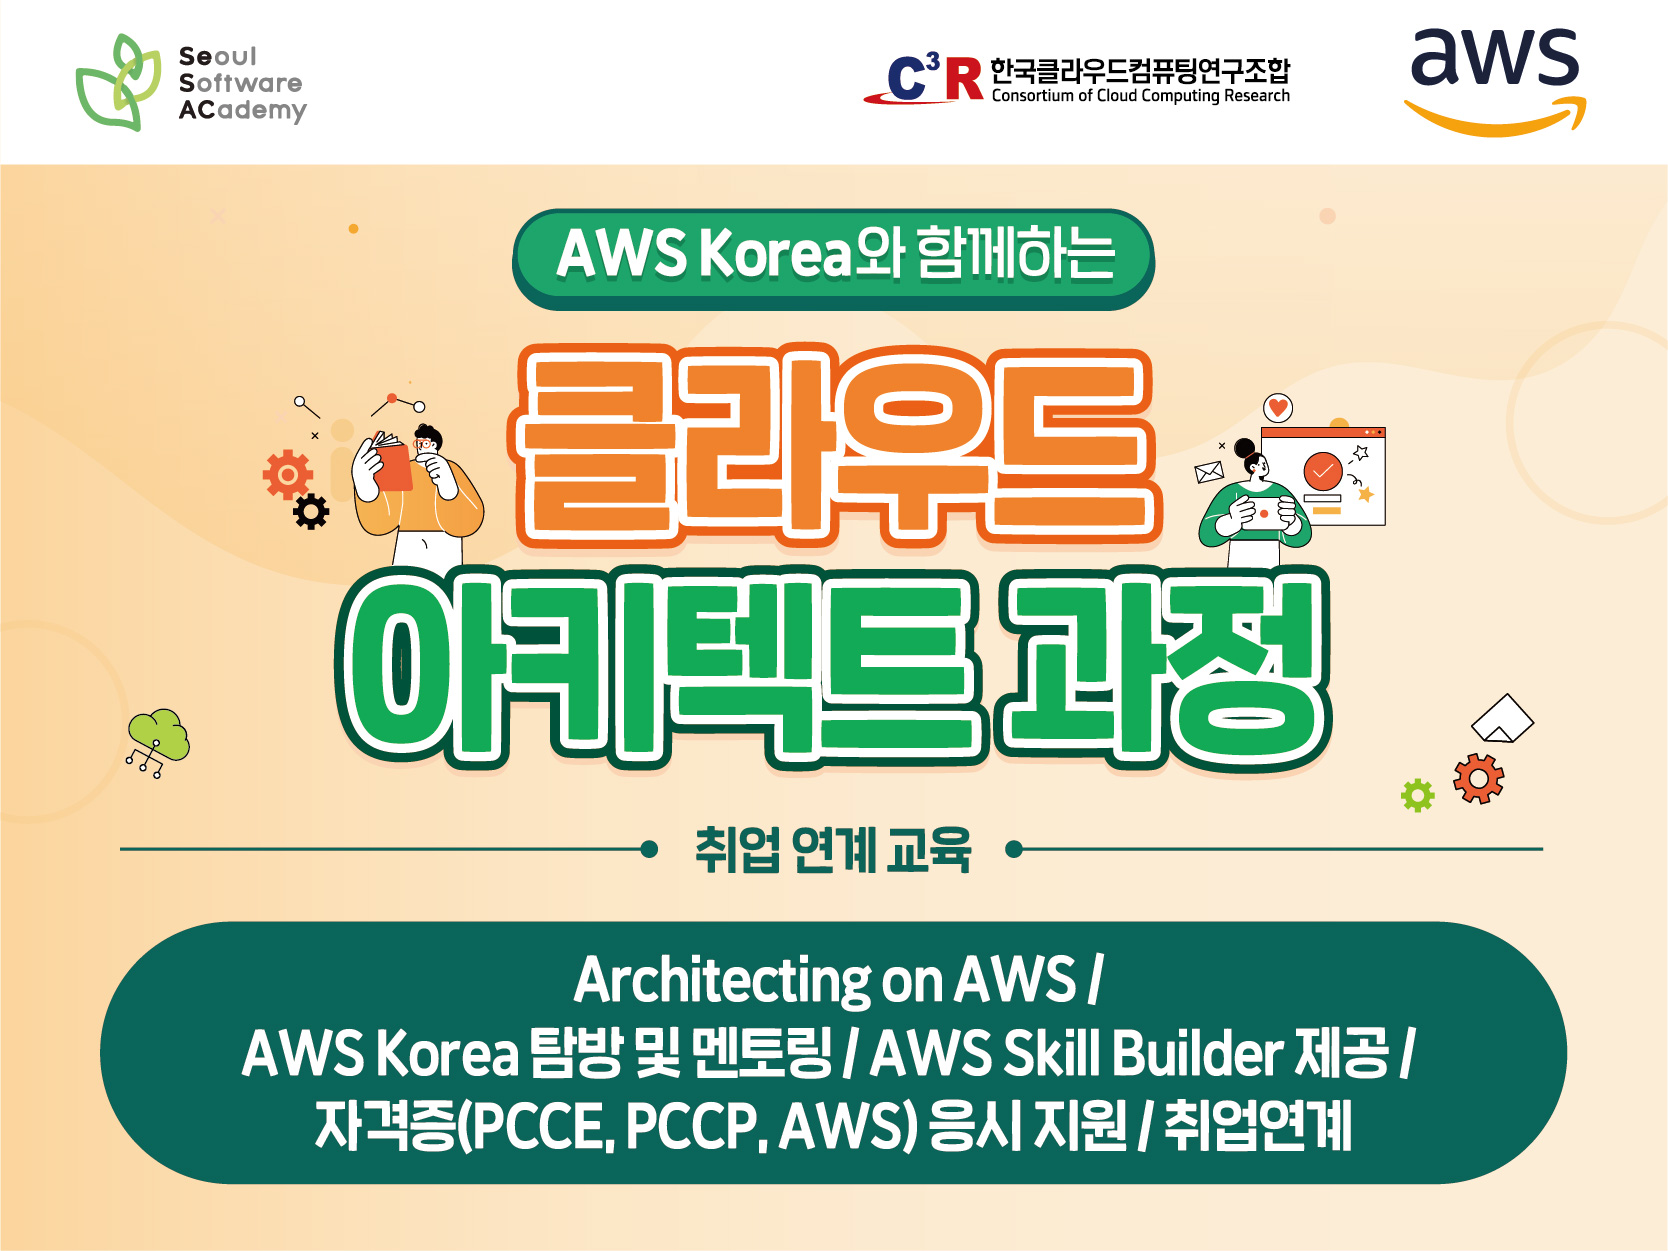 (동대문1기) AWS Korea와 함께하는 클라우드 아키텍트 과정